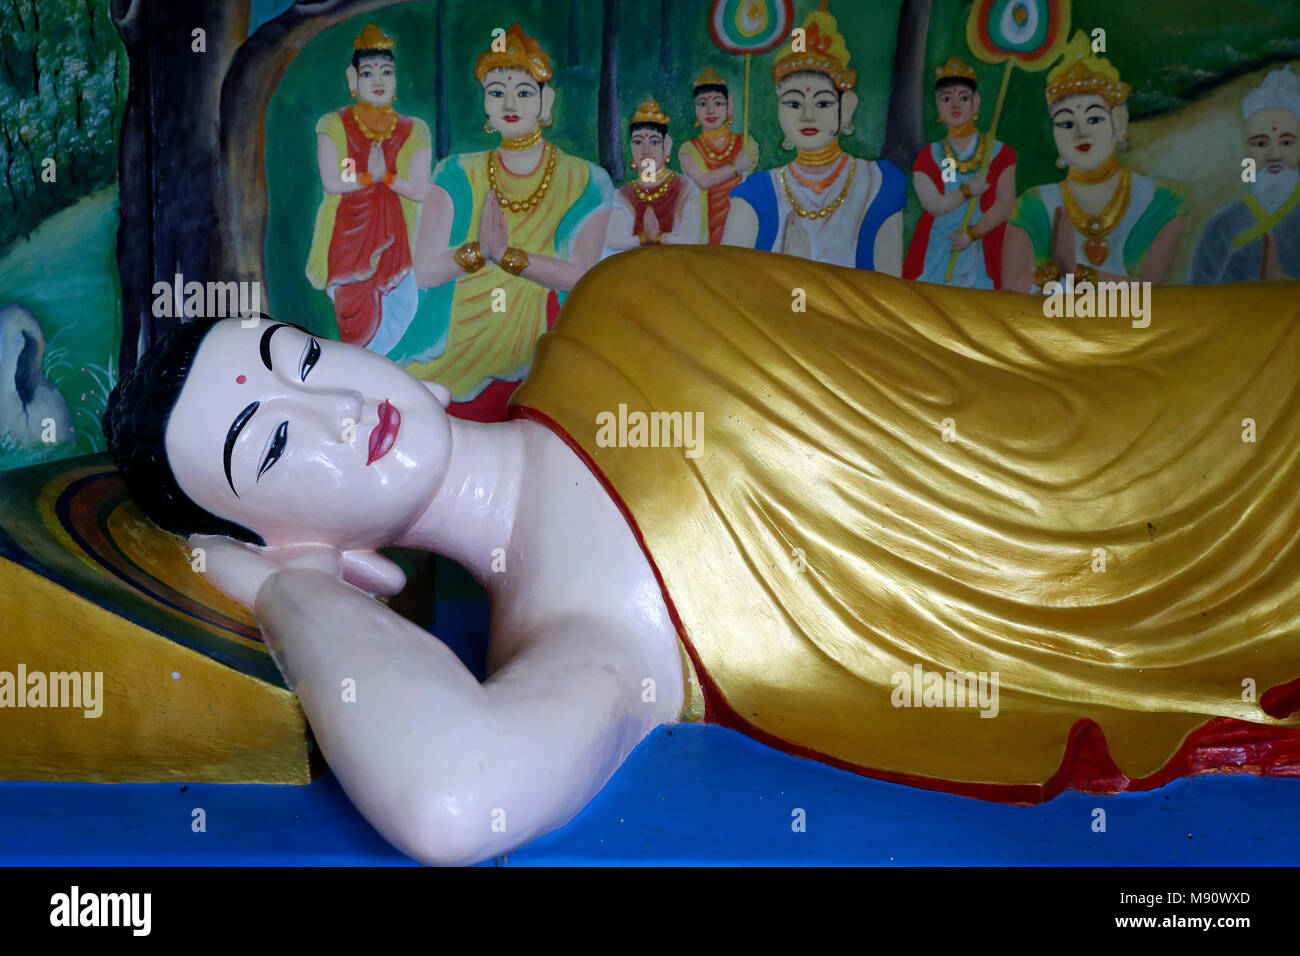 Sung Hung Pagode. Liegenden Buddha Statue. Nach 45 Jahren des Dharma, die Lehre des Buddha in Parinirvana. Phu Quoc. Vietnam. Stockfoto